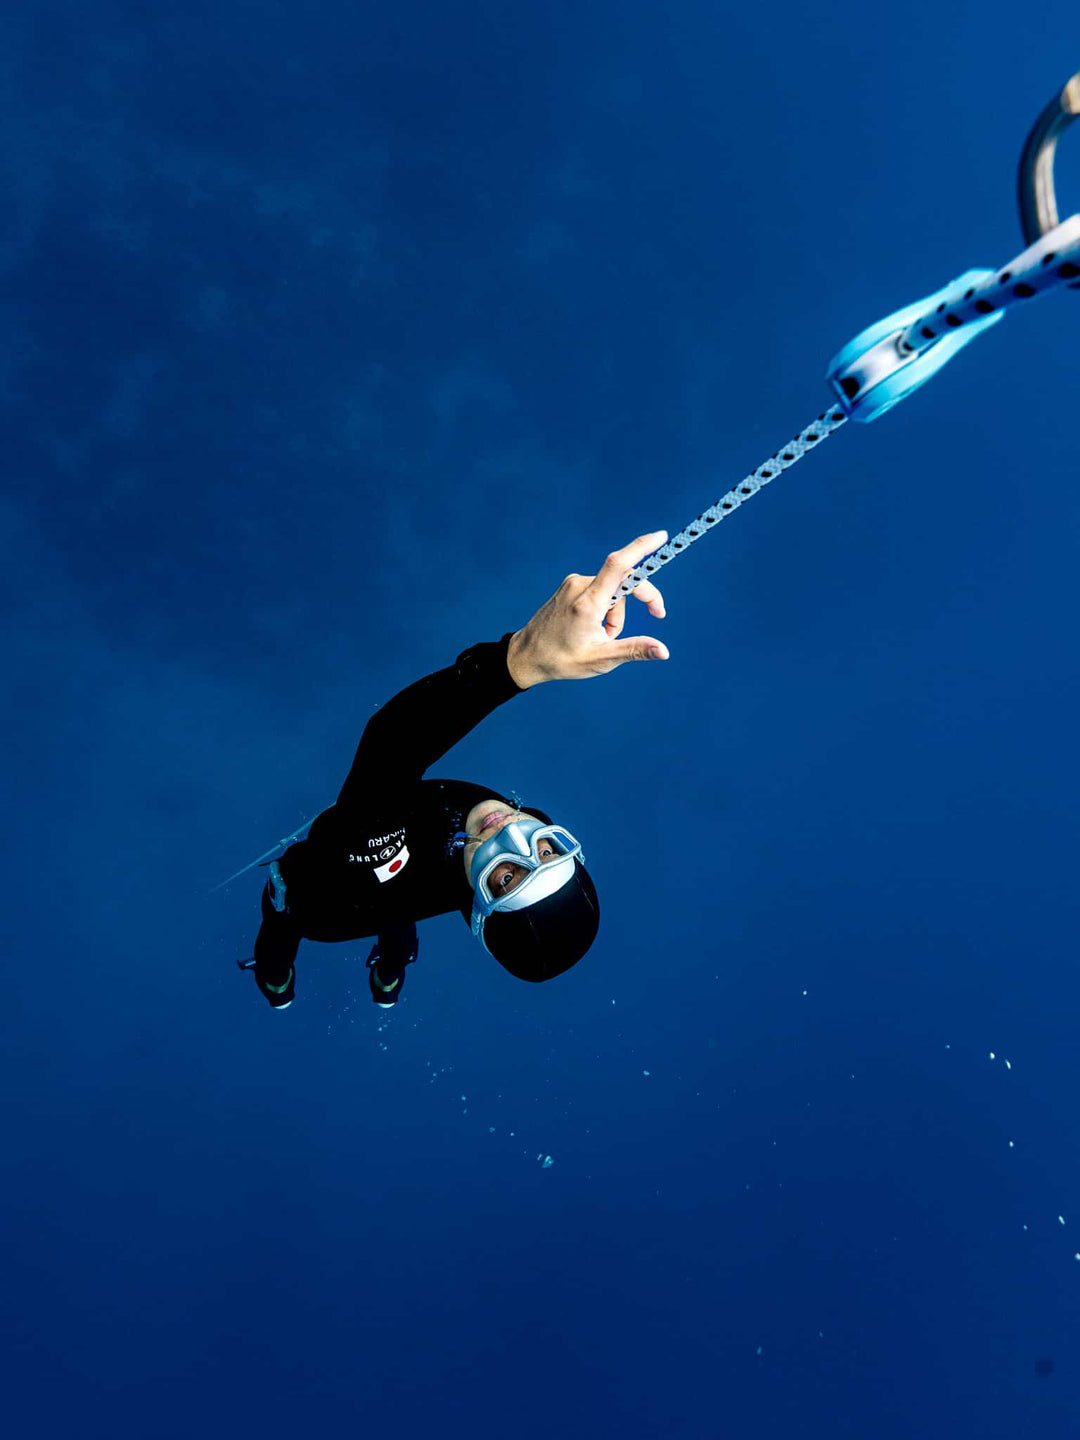 UMMY Freediving Mask Streamline Black Freediving Skindiving Snorkeling